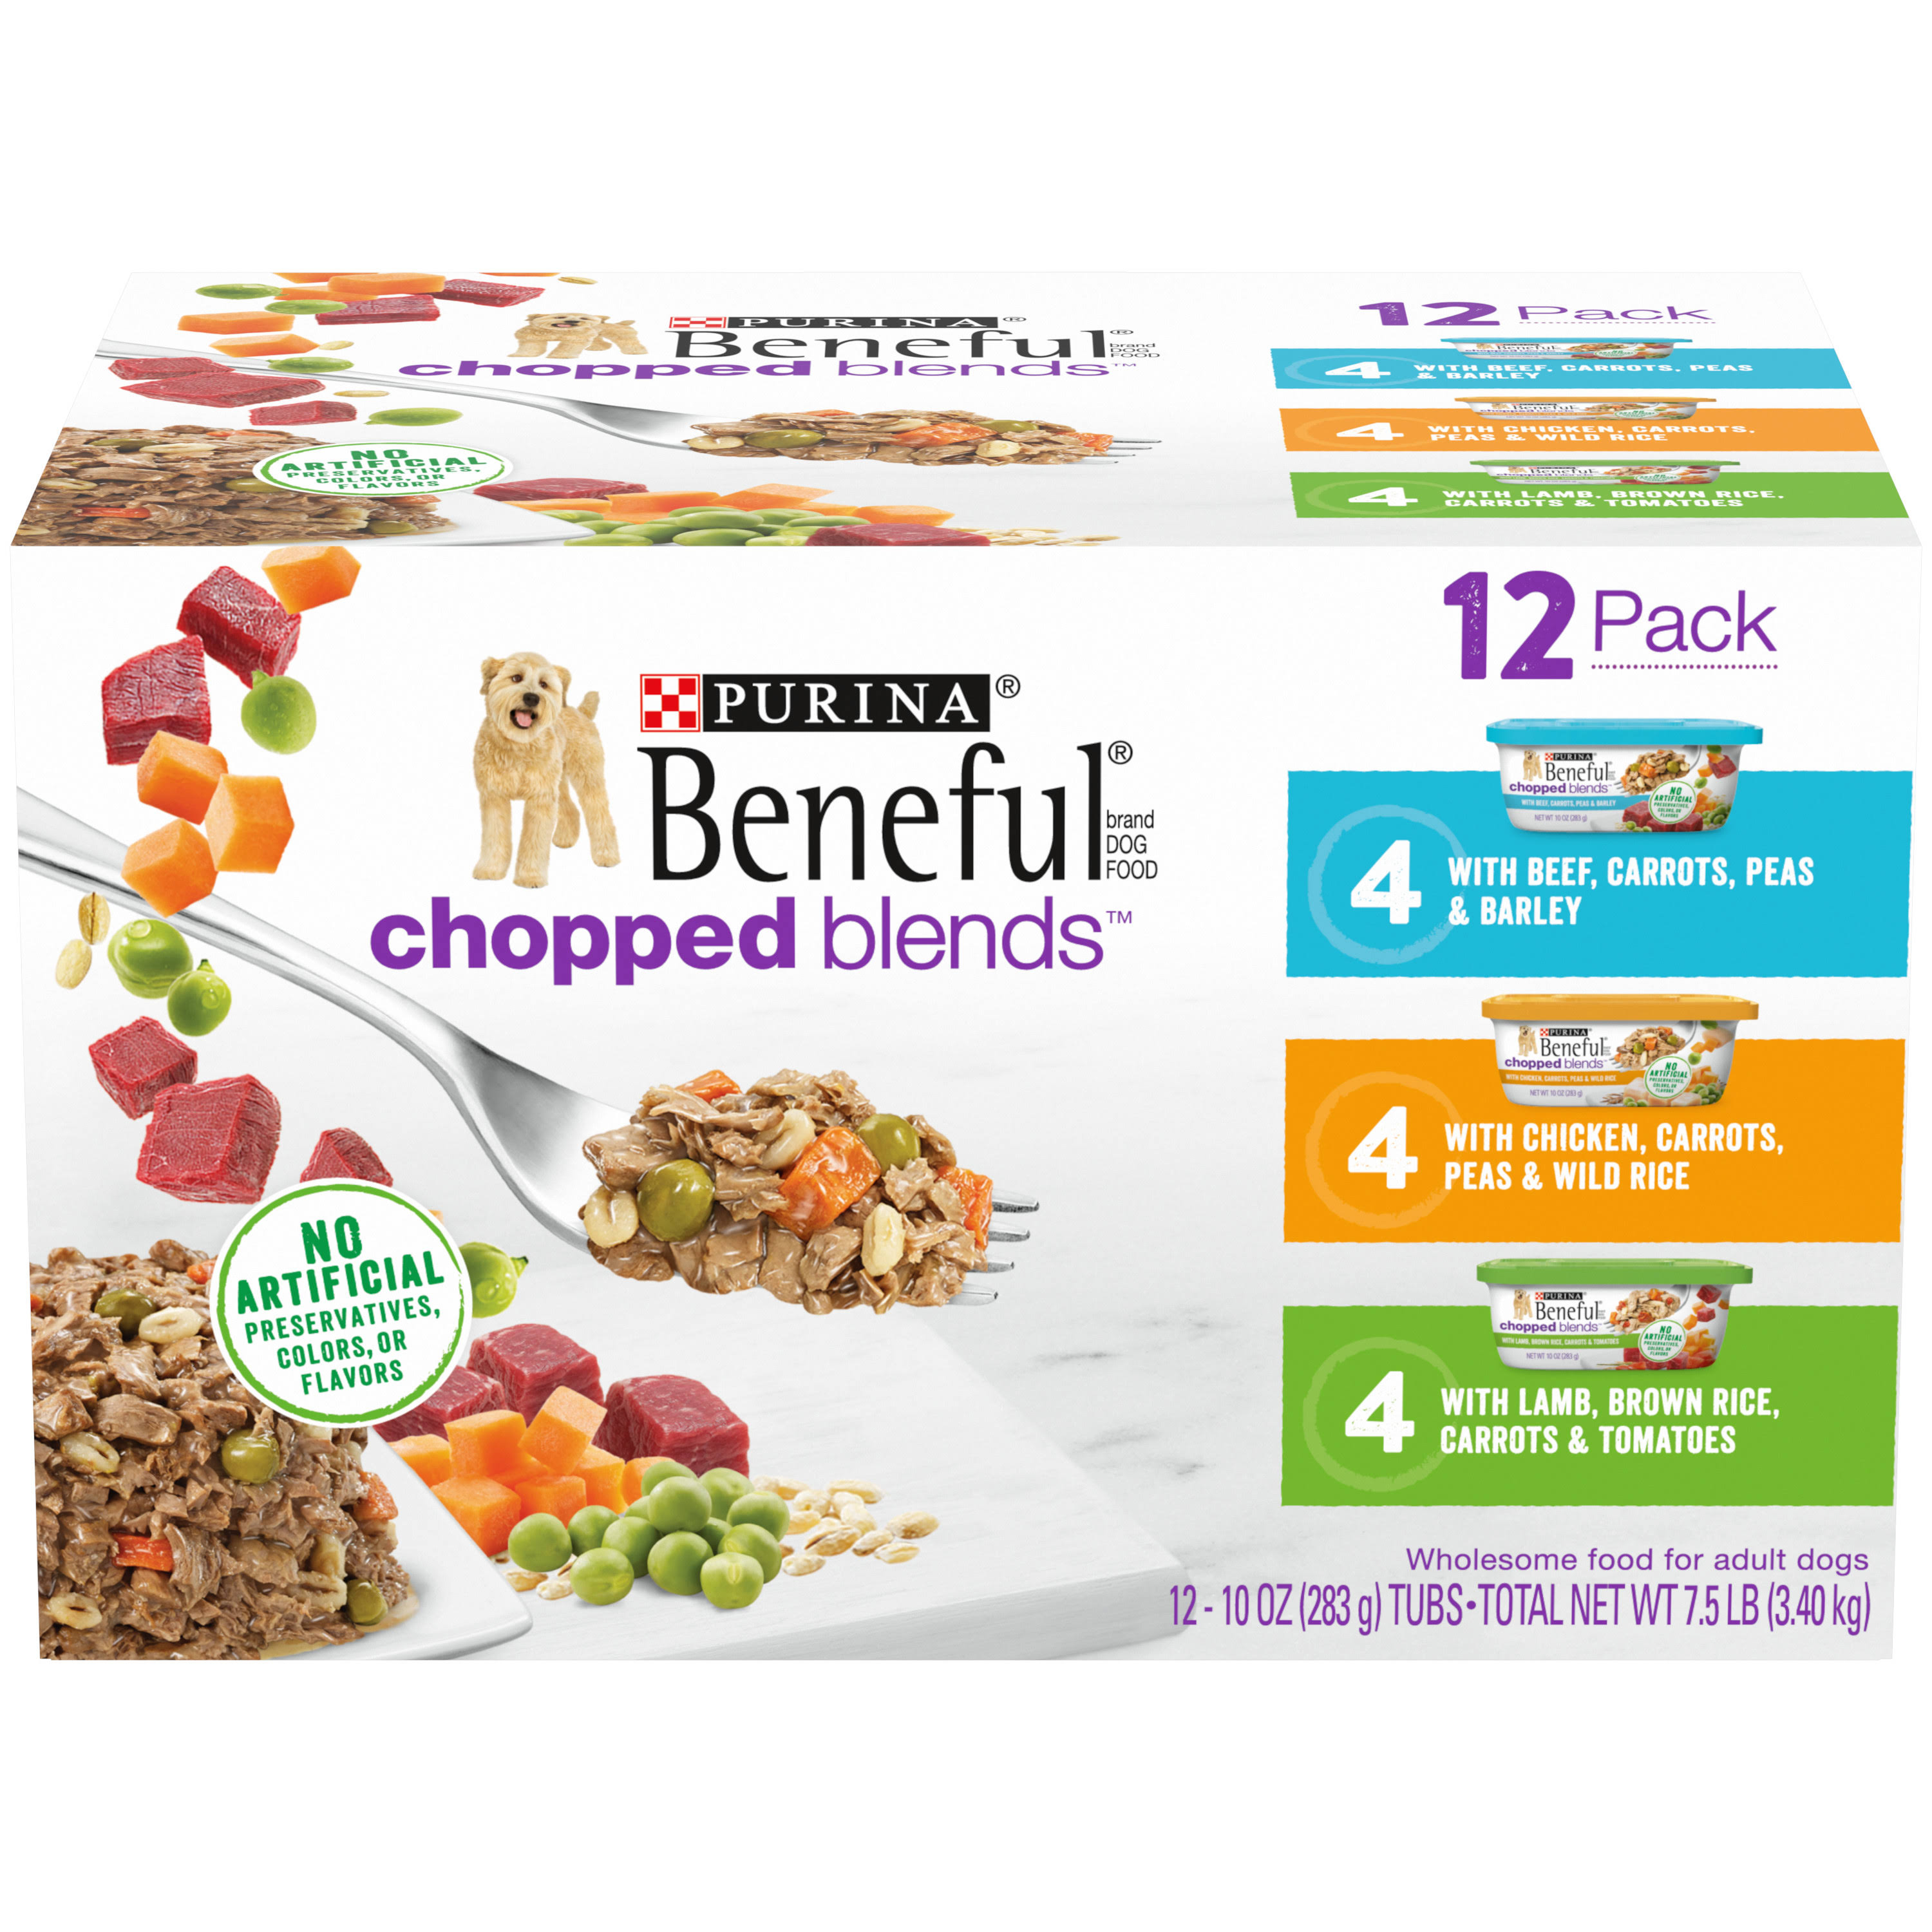 Beneful Chopped Blends Dog Food, 12 Pack - 12 pack, 10 oz tubs